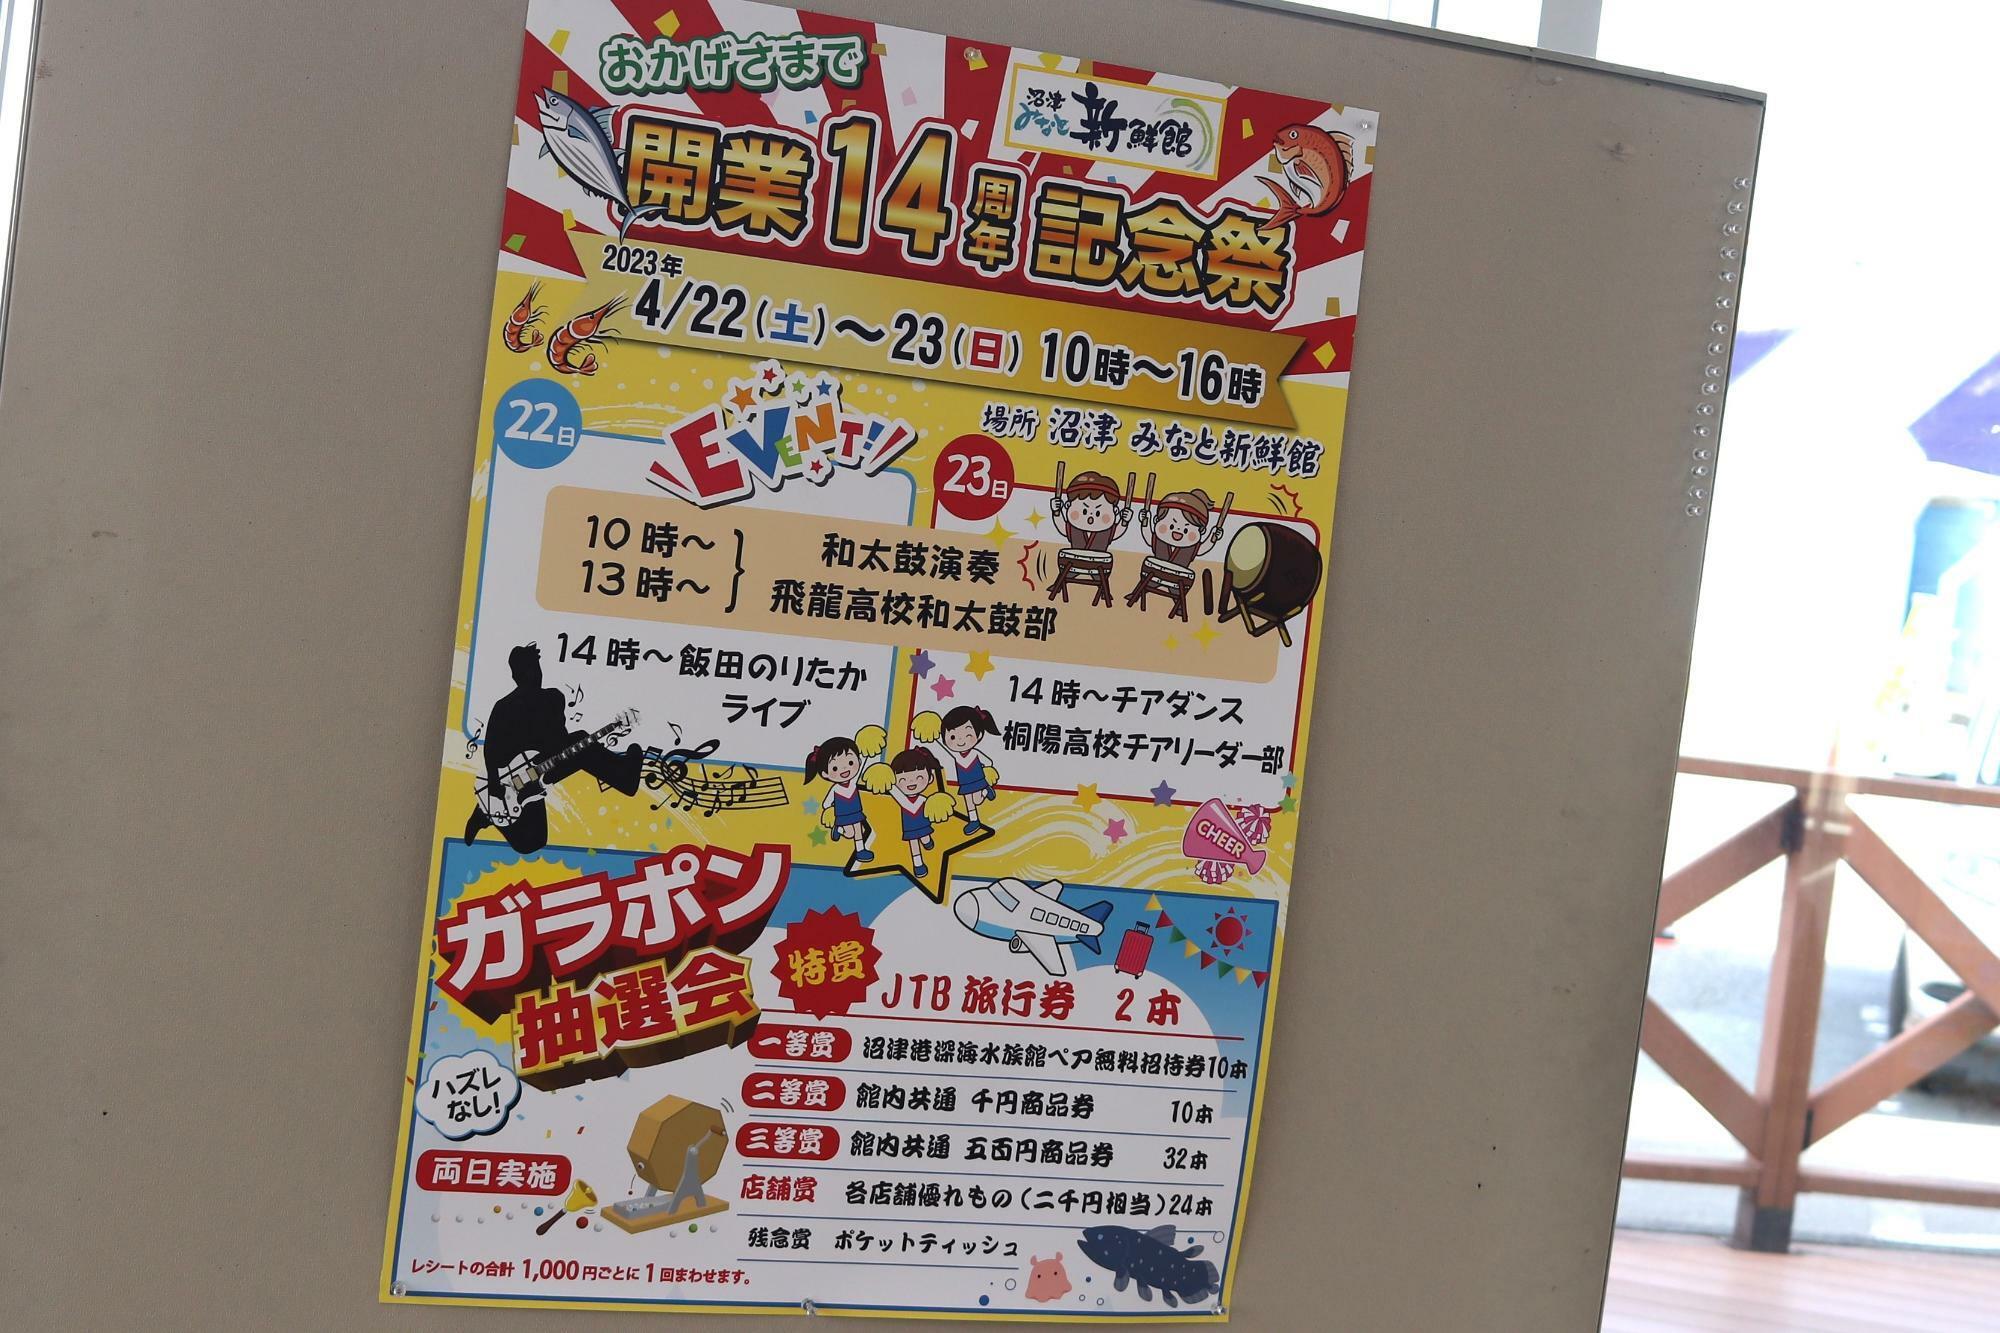 沼津みなと新鮮館開業14周年記念祭のポスター